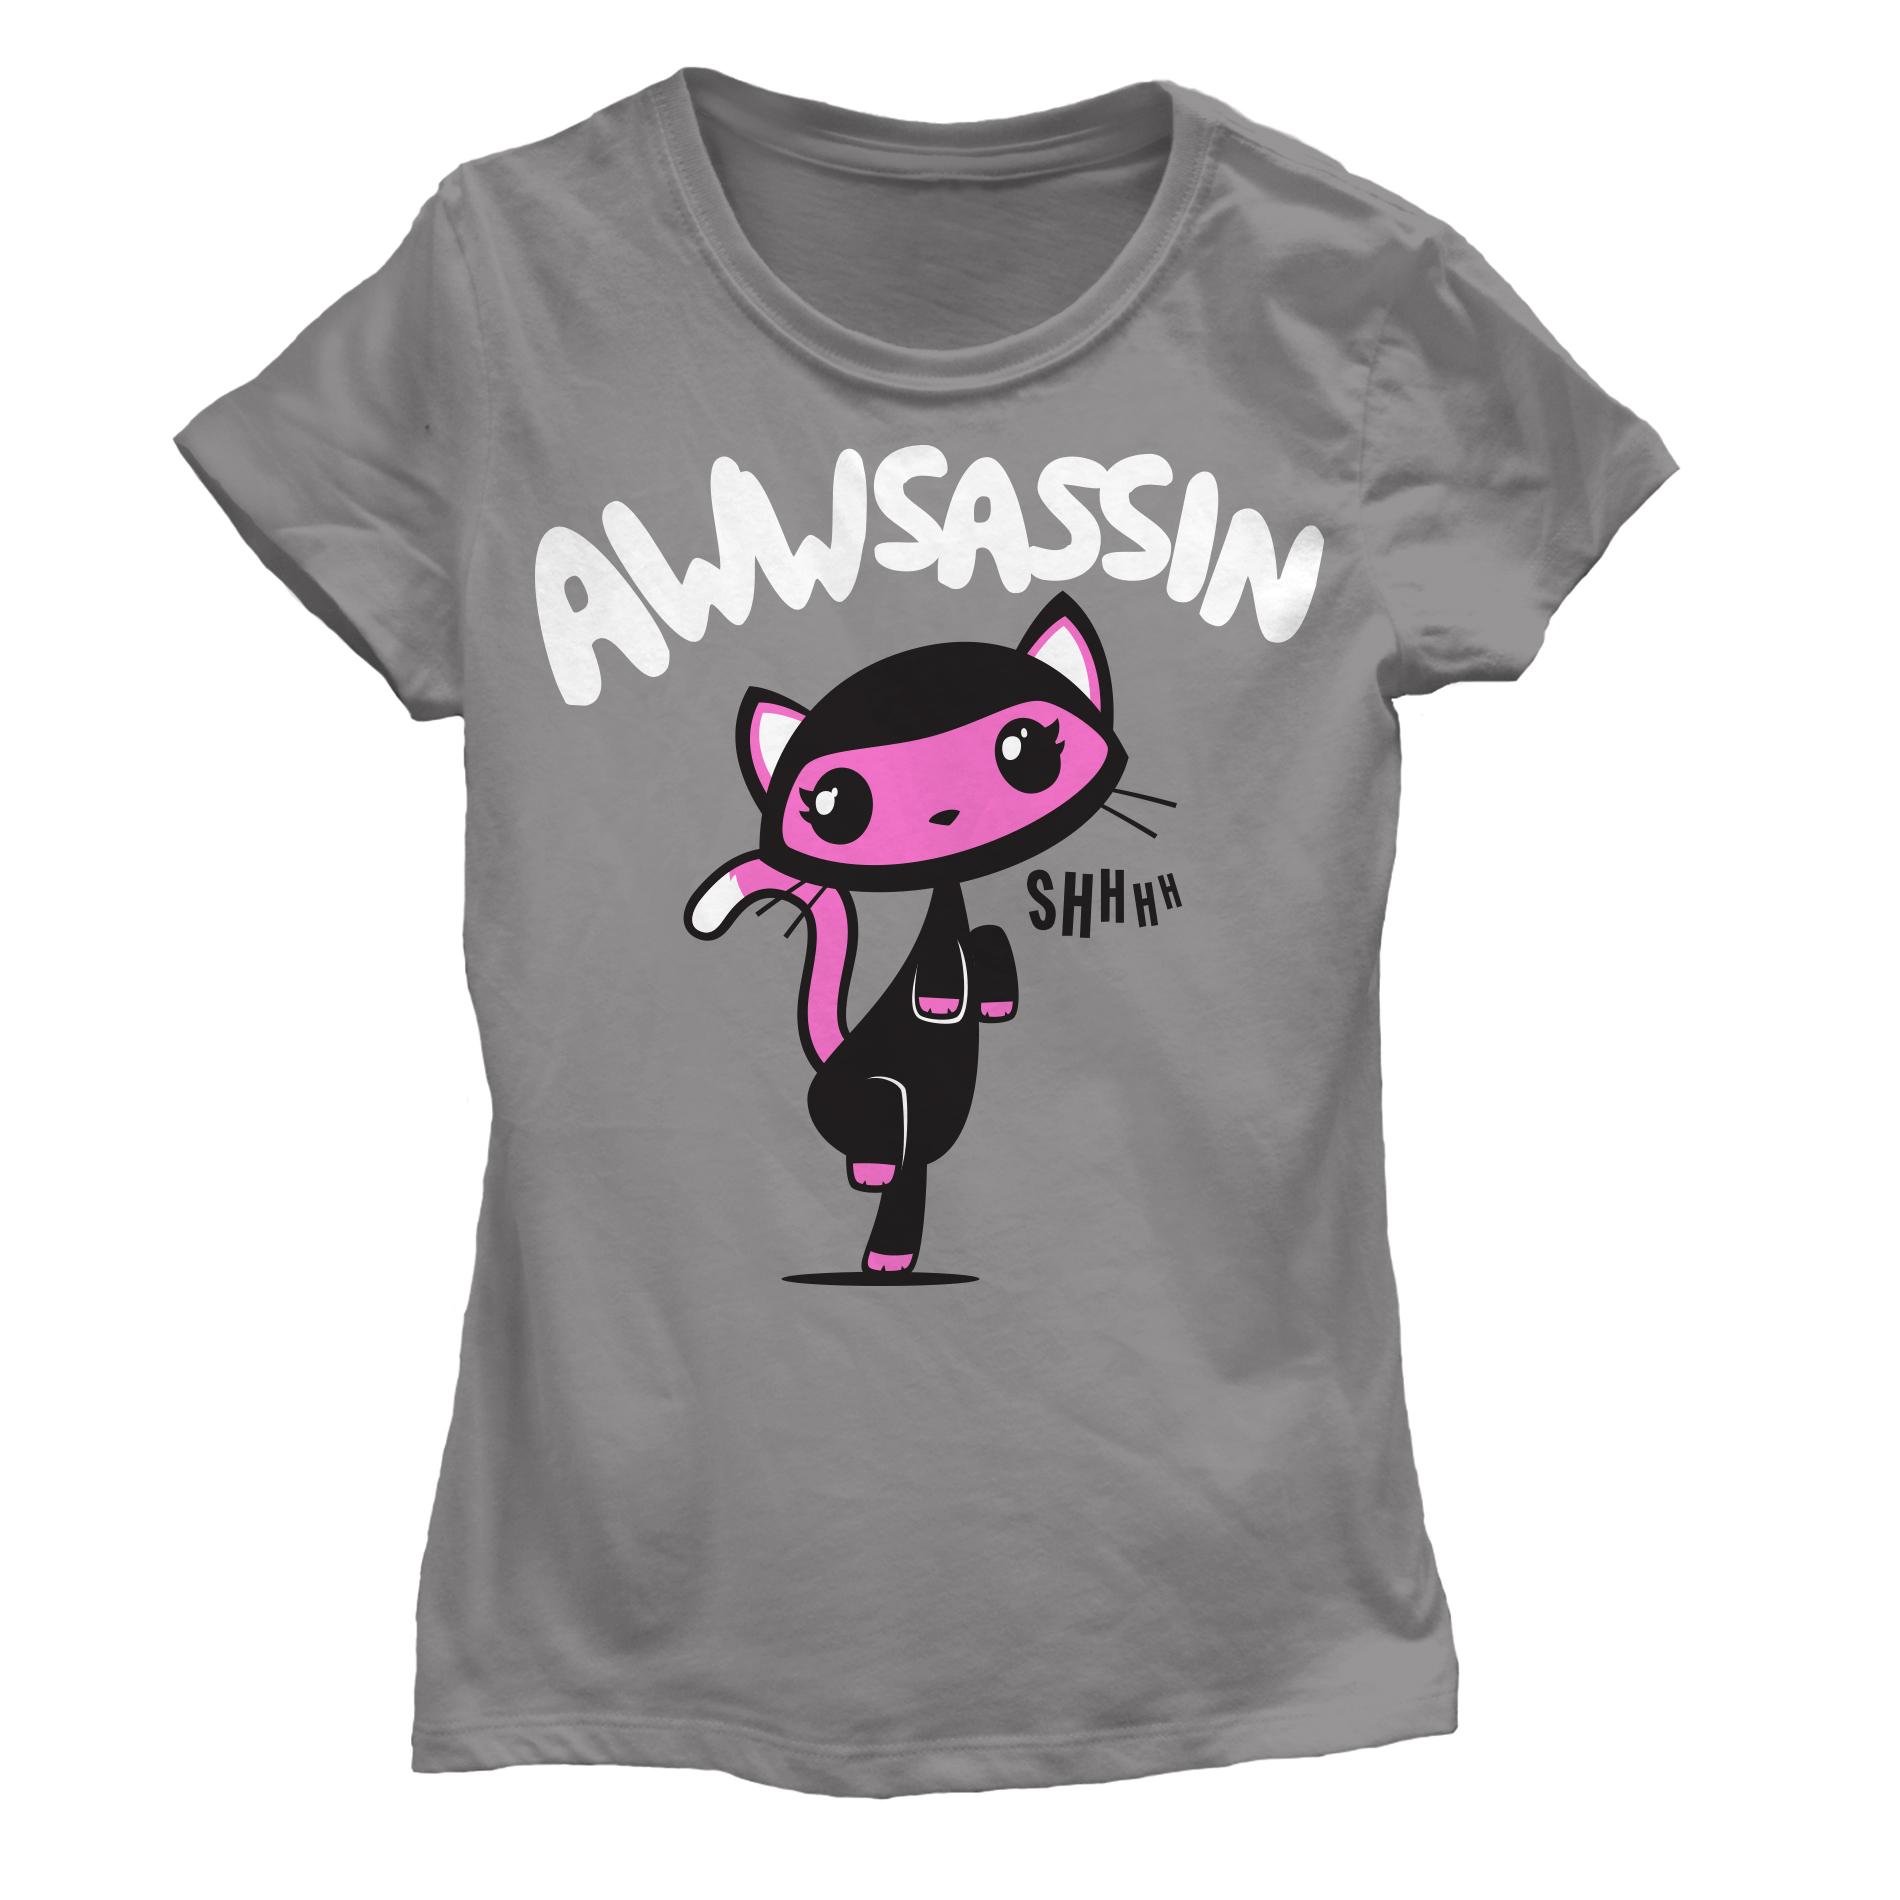 Hybrid Girl's Graphic T-Shirt - Assassin